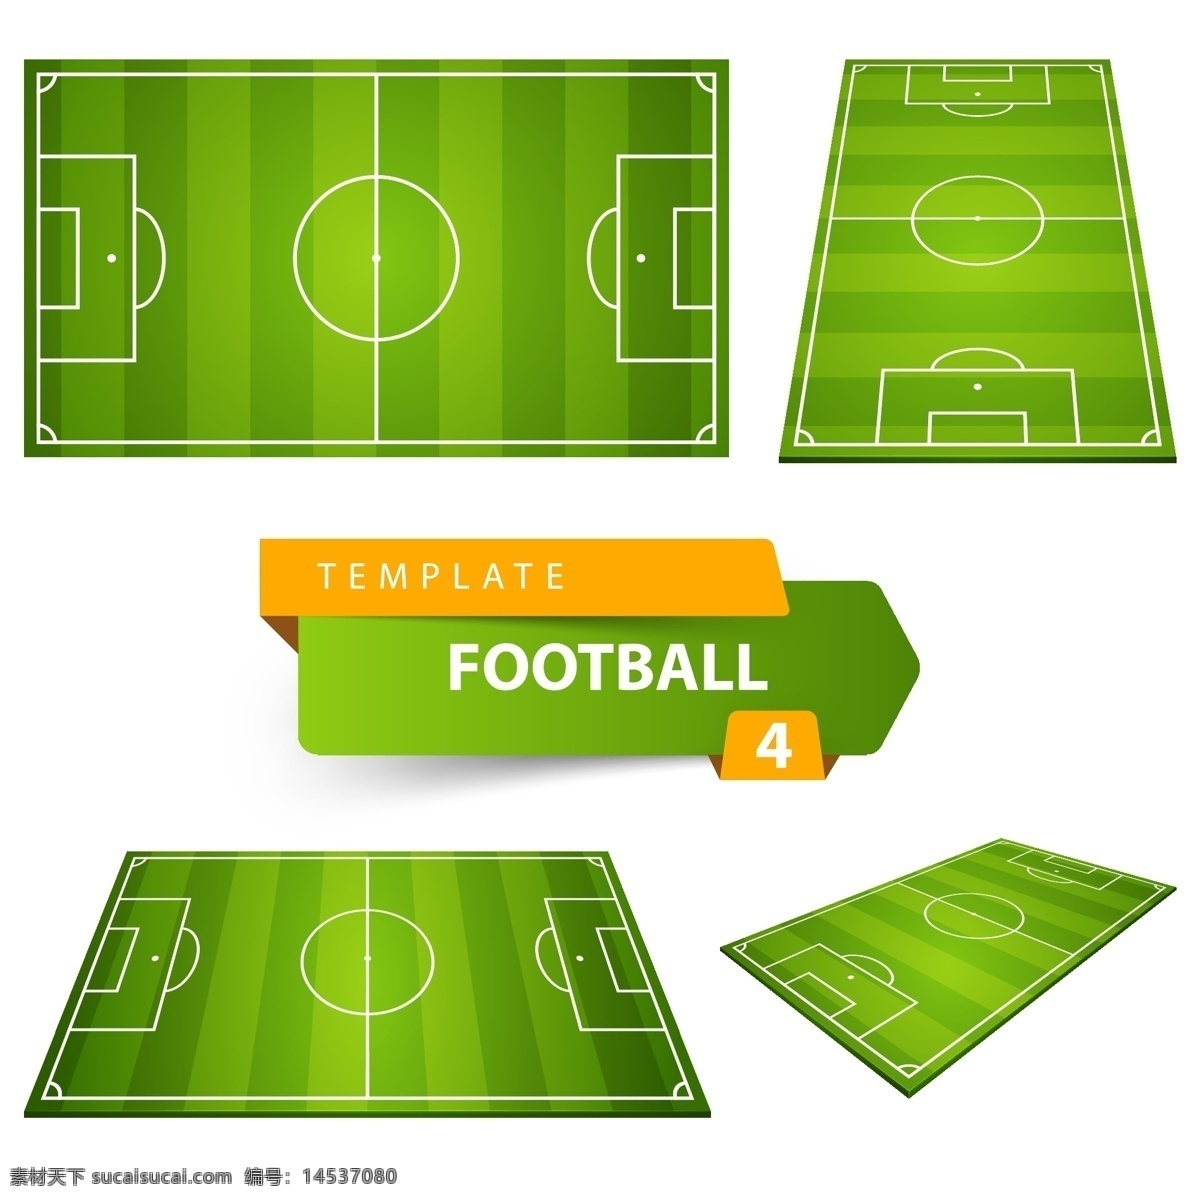 足球场 模型 矢量素材 矢量图 设计素材 创意设计 绿茵场 矢量 高清图片